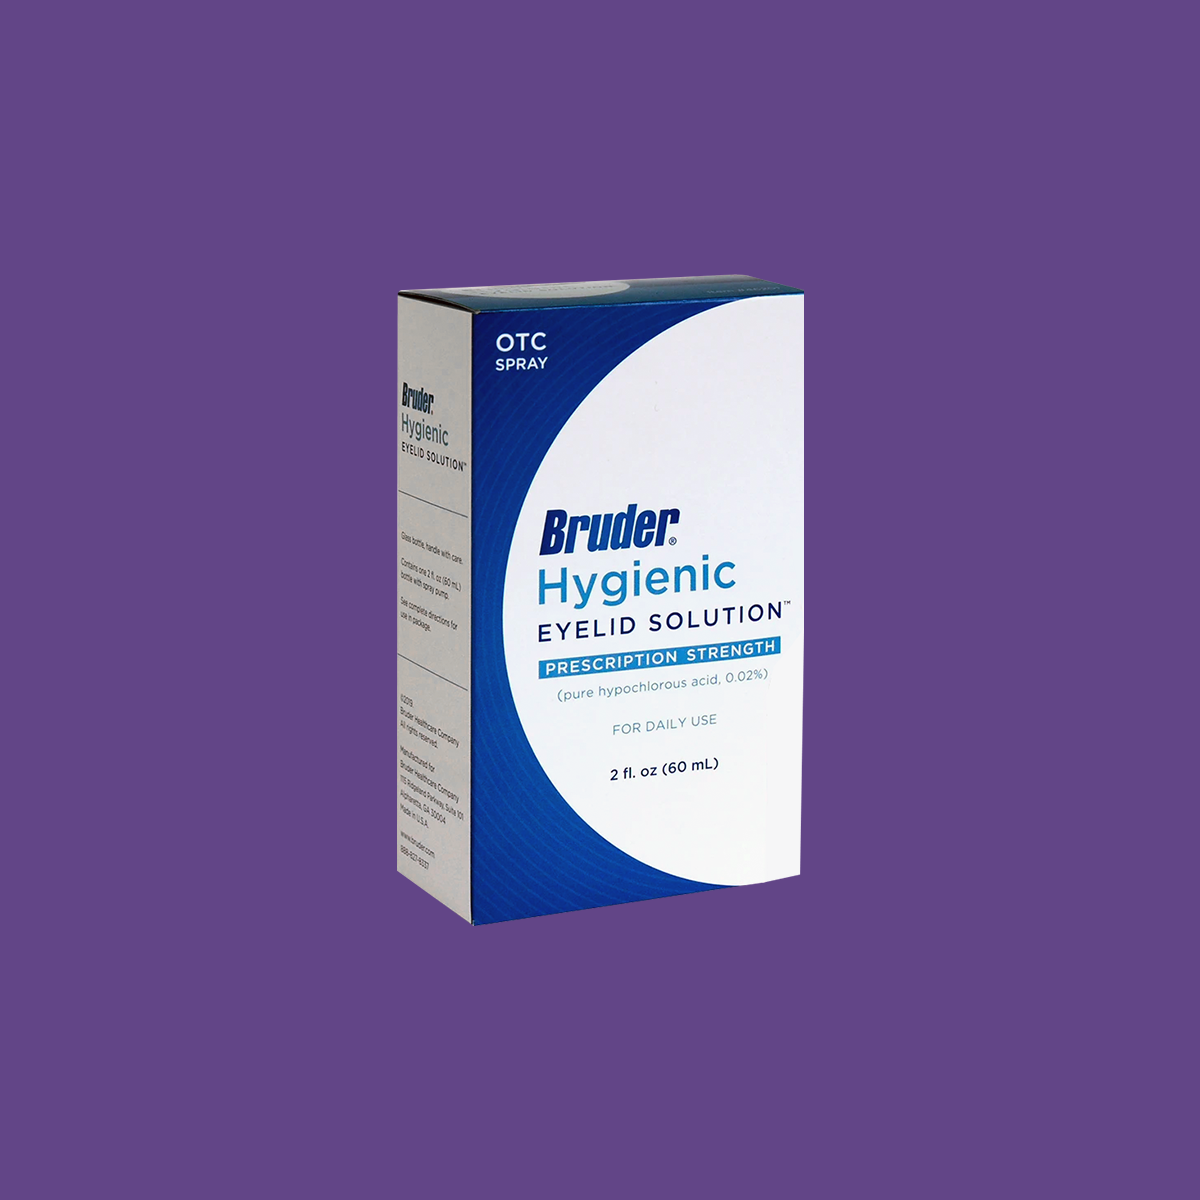 Bruder Hypochlorous Hygienic Eyelid Solution (1oz & 2oz bottles)